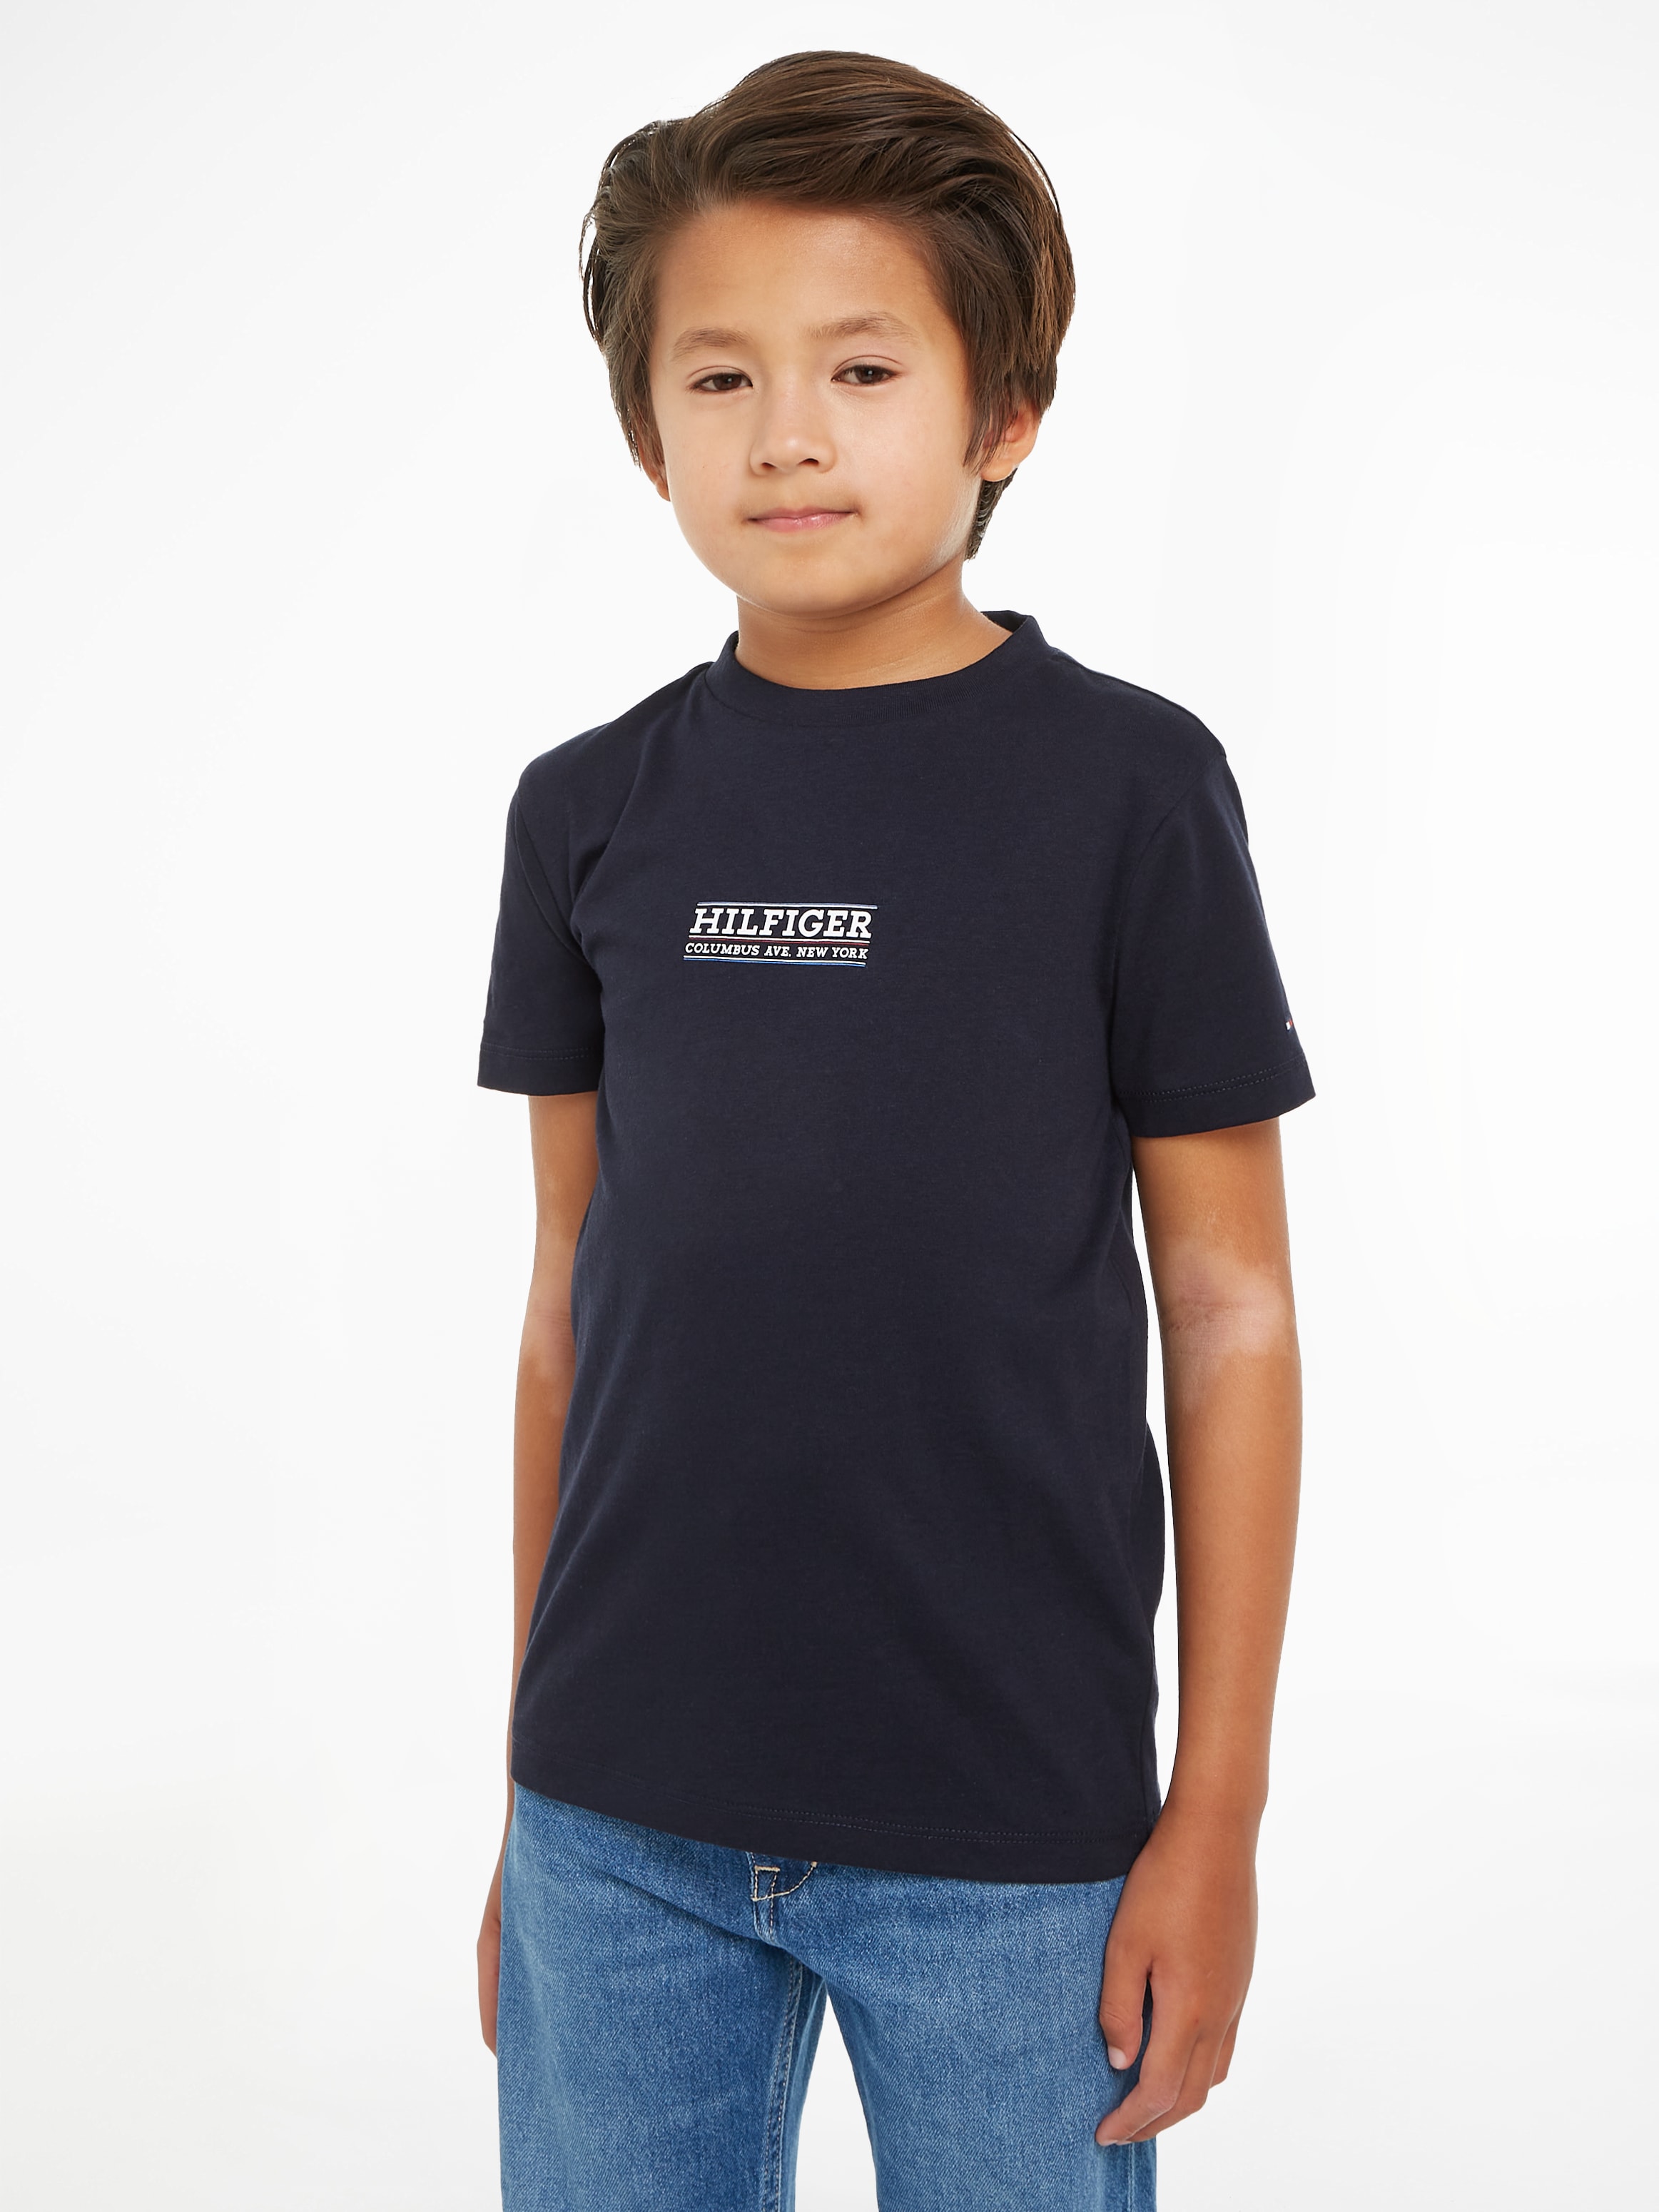 16 Hilfiger bis online T-Shirt S/S«, »HILFIGER bestellen Tommy Jahre TEE Kinder